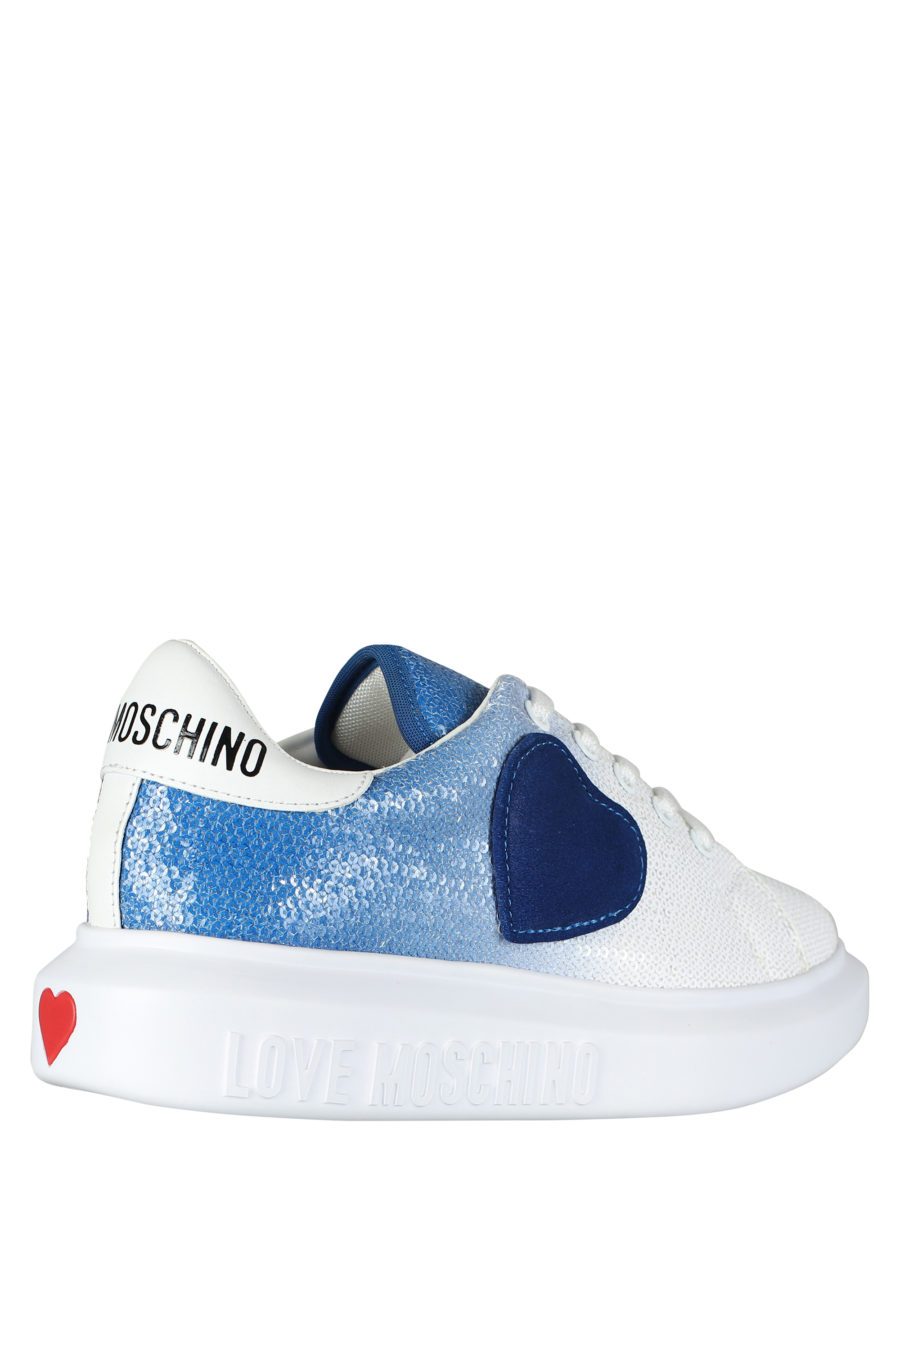 Zapatillas blancas con degrade azul y lentejuelas - IMG 5258